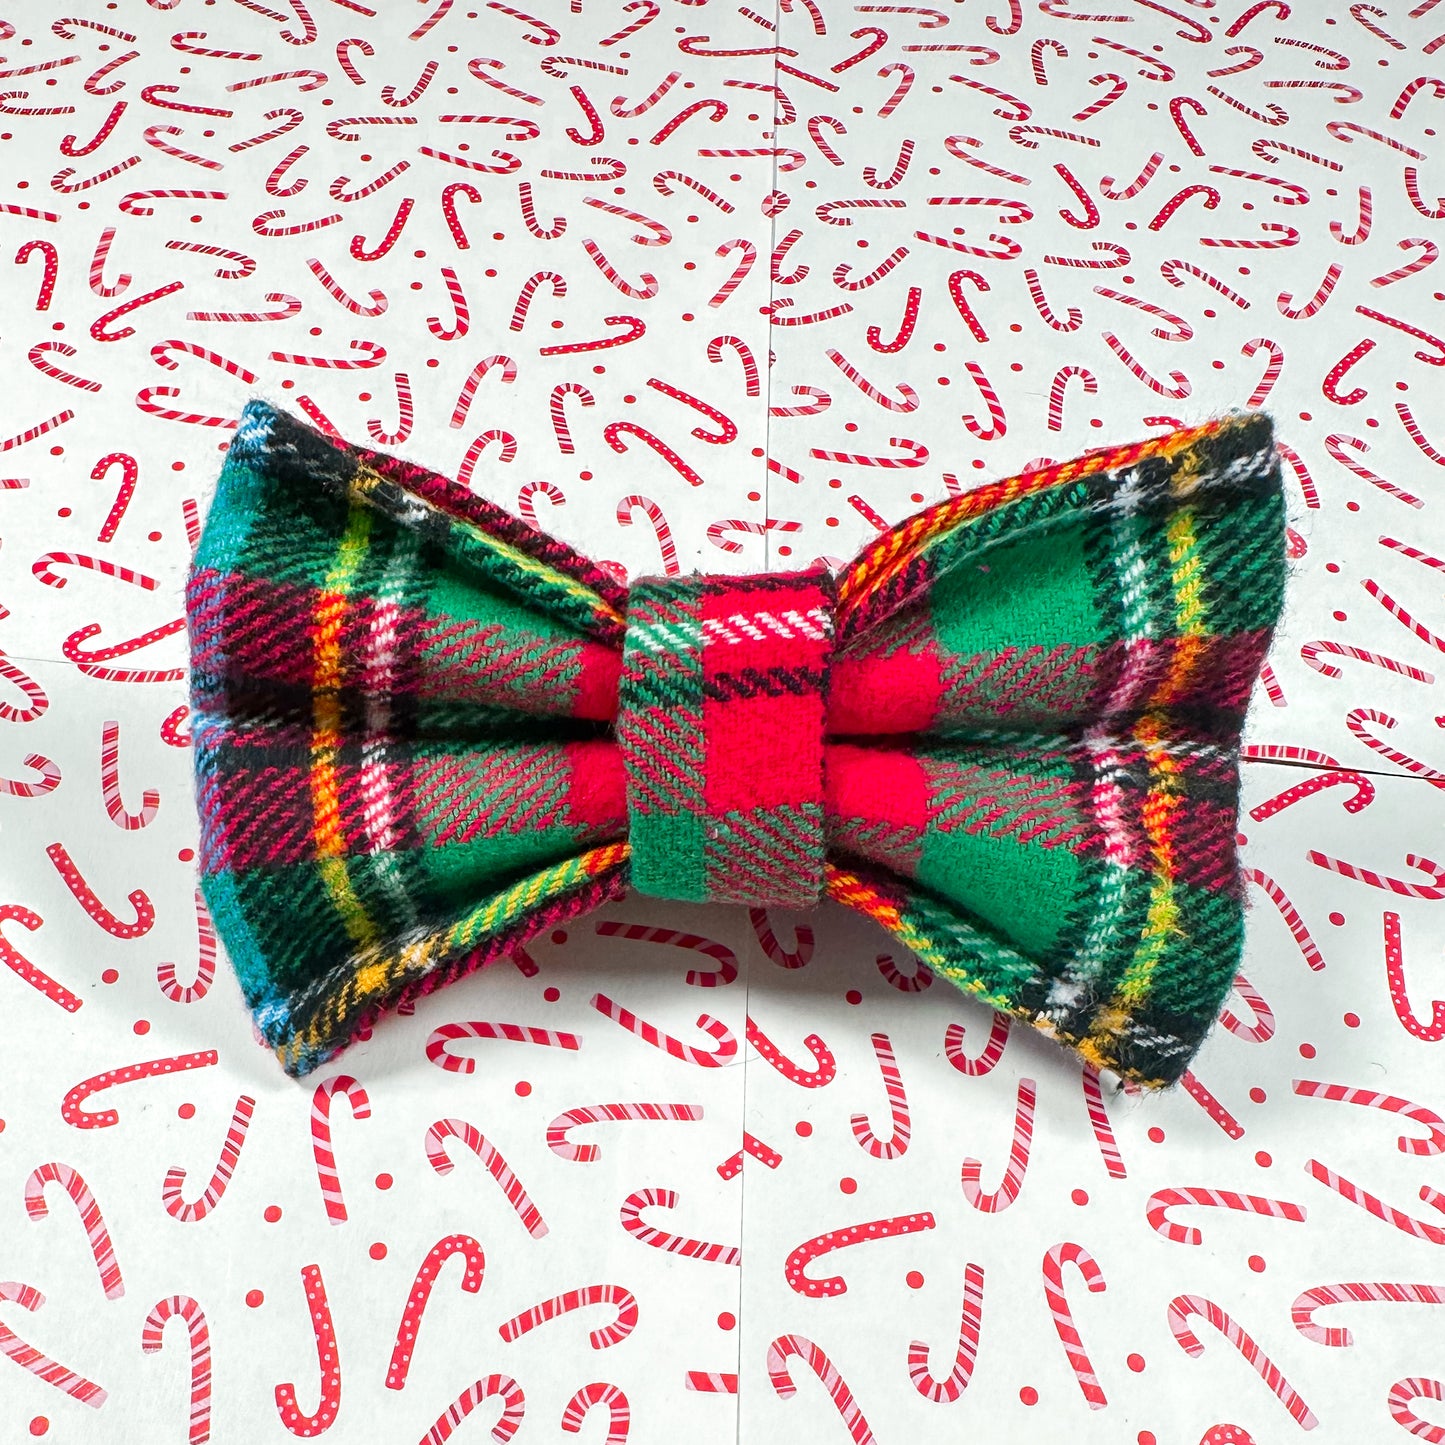 Christmas Plaid Bow Tie